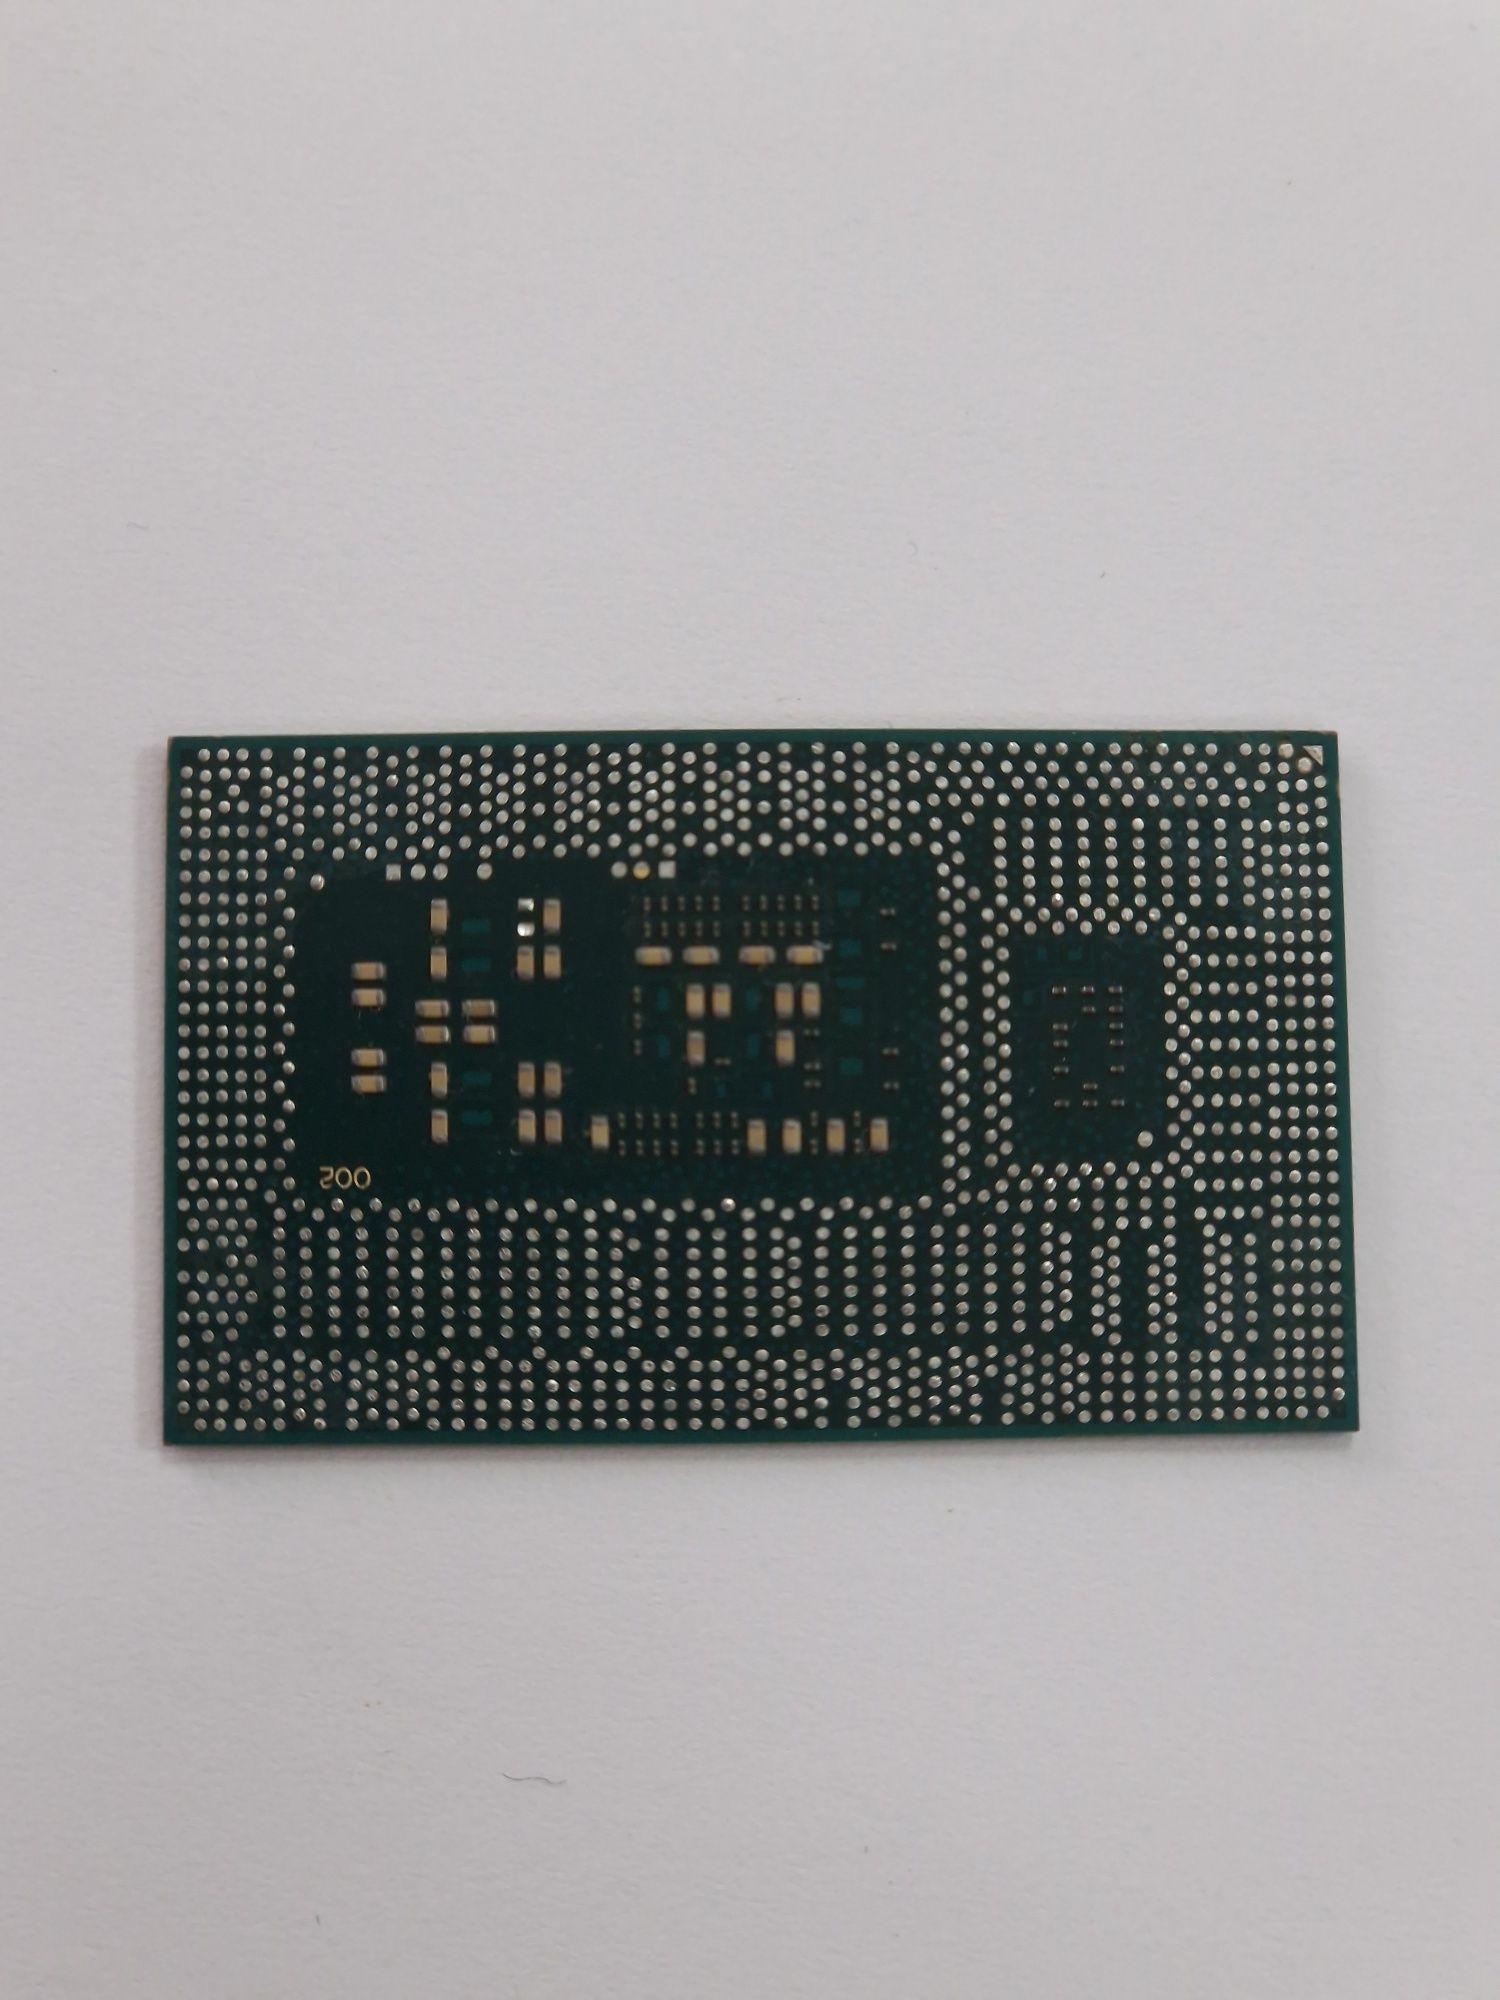 Процессор  Intel core i7 - 4510U SR1EB 3.1GHz 15 W